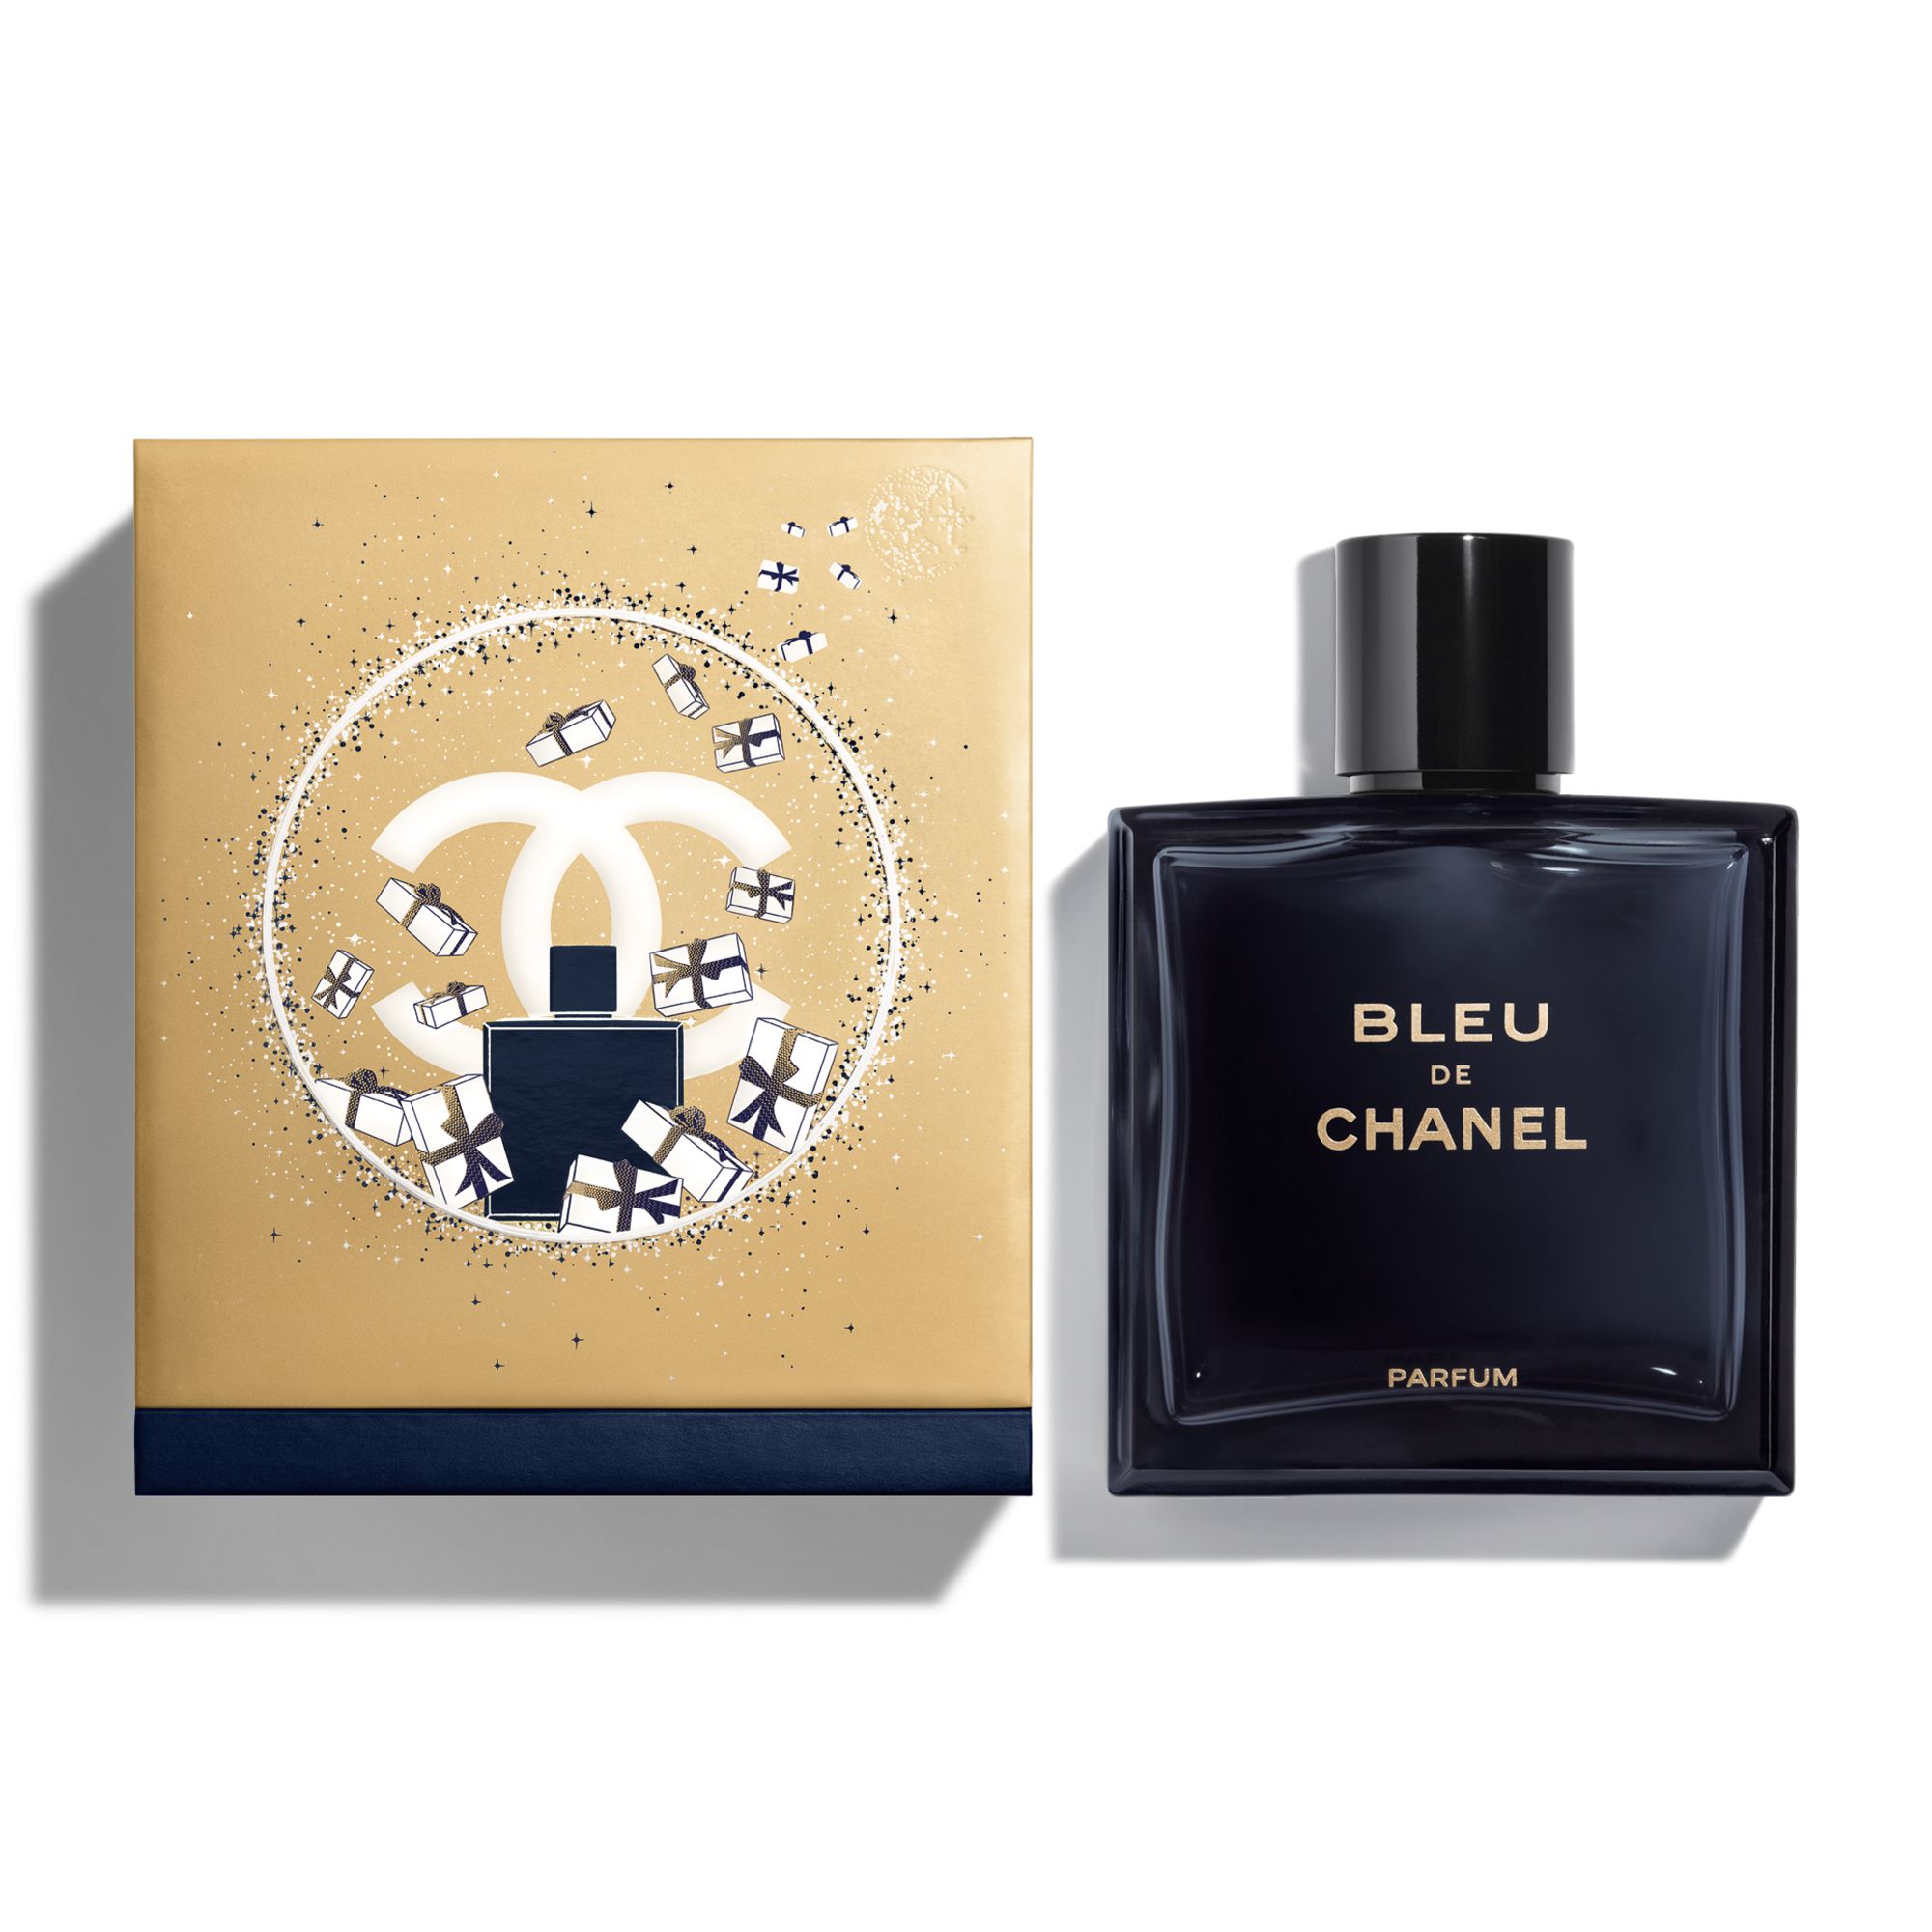 BLEU DE CHANEL Parfum Limited Edition